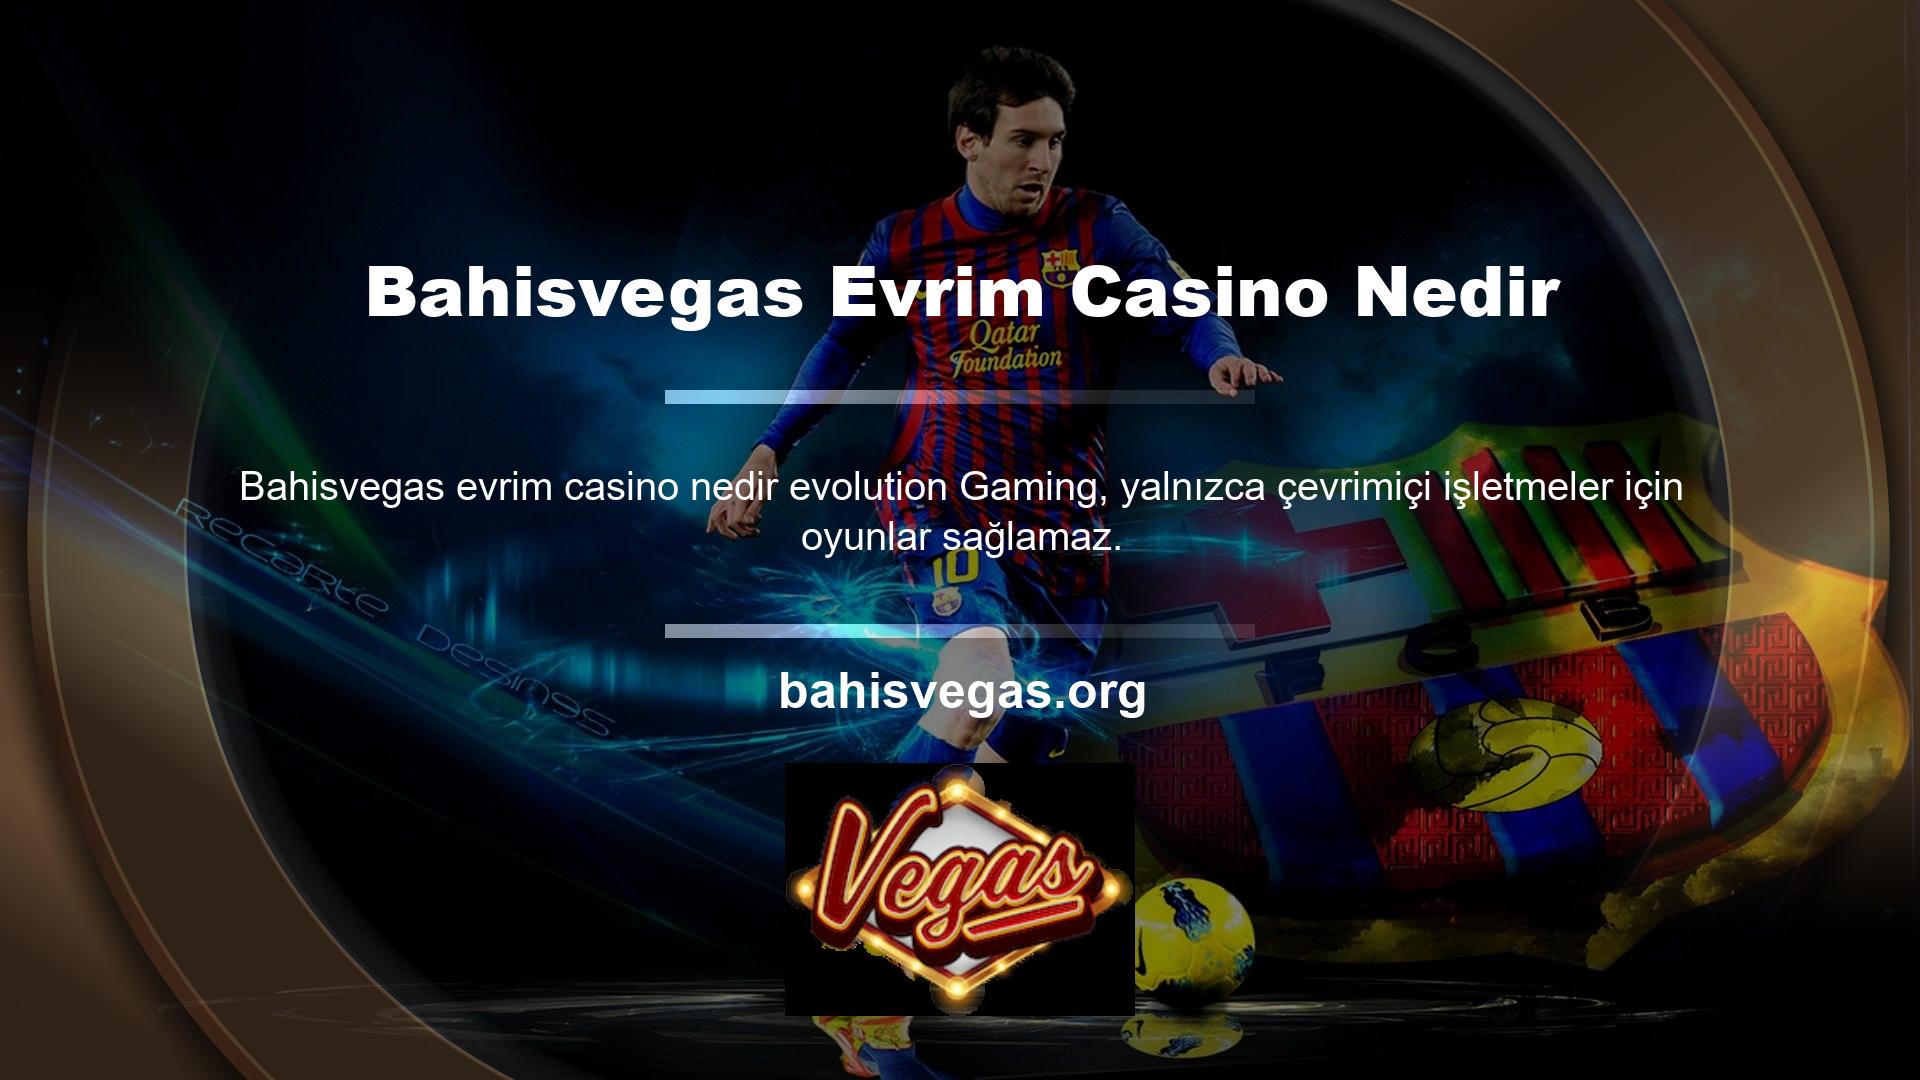 Şirket ayrıca dünyanın dört bir yanındaki büyük, iyi bilinen casinolara masalar, slot makineleri ve desteler satmaktadır